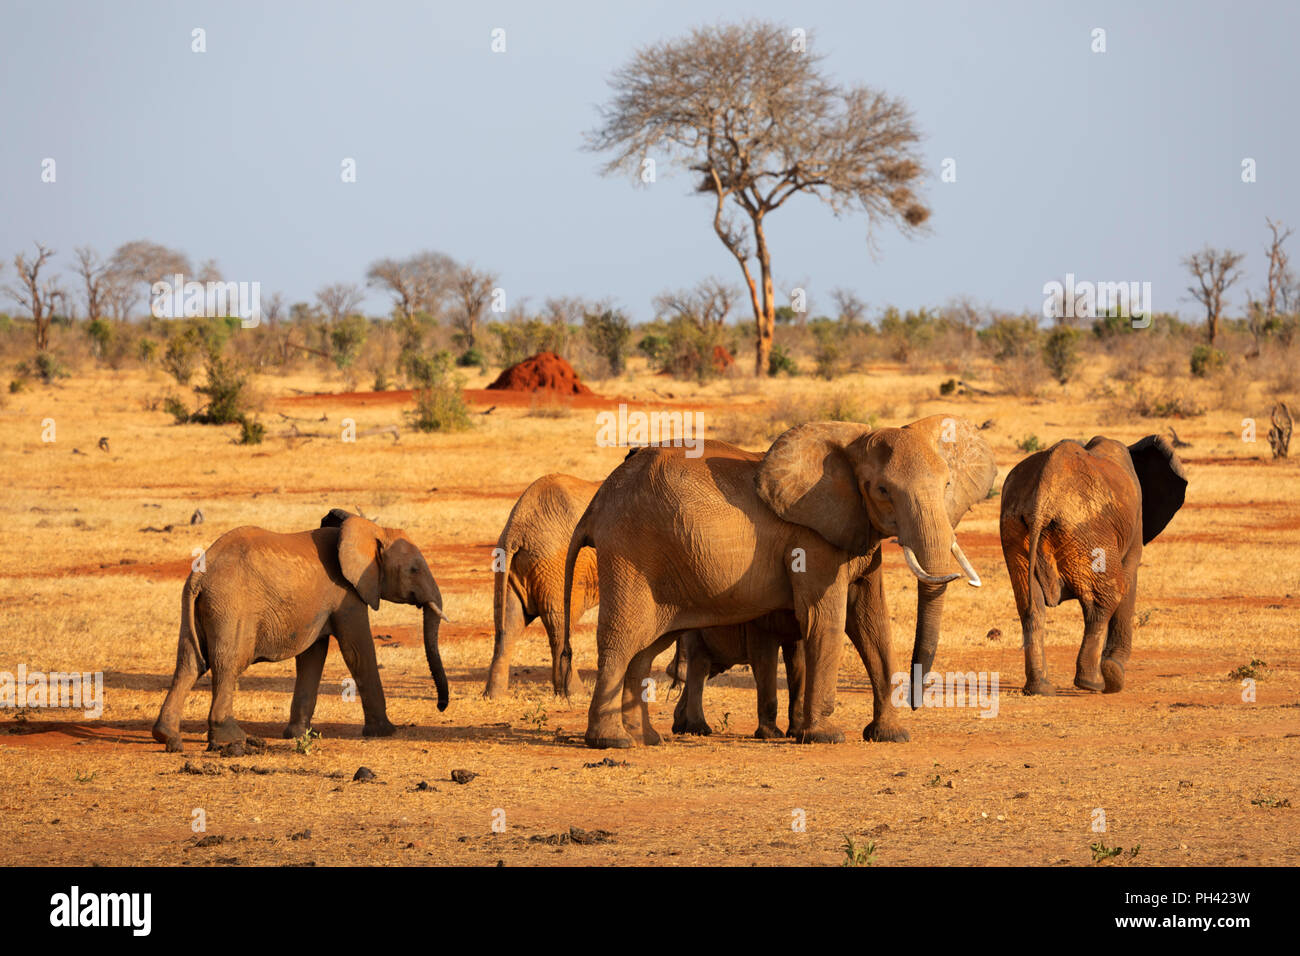 Parco nazionale orientale di tsavo, Kenya, Africa - un branco di elefanti africani e del polpaccio camminare attraverso la savana secca con acacia in sera la luce solare Foto Stock